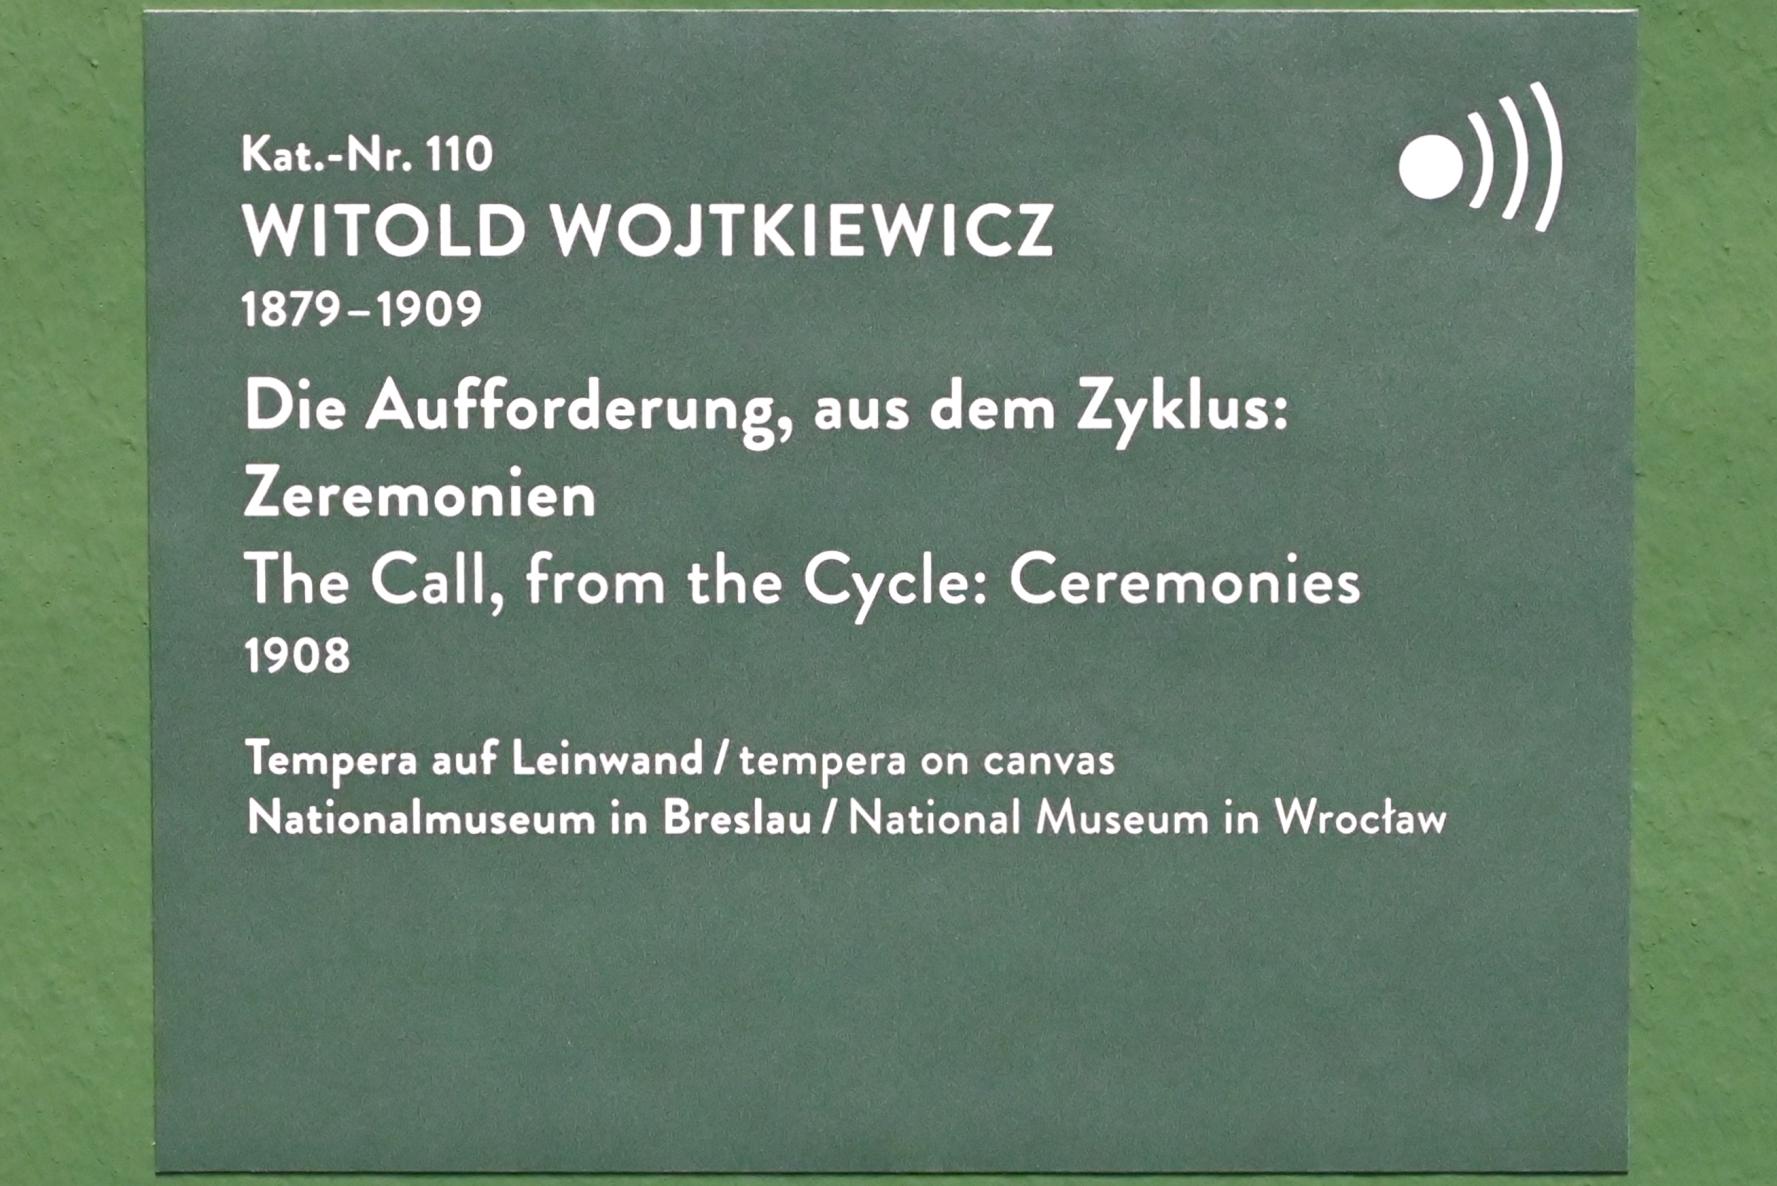 Witold Wojtkiewicz (1904–1909), Die Aufforderung, aus dem Zyklus: Zeremonien, München, Kunsthalle, Ausstellung "Polnischer Symbolismus um 1900" vom 25.03.-07.08.2022, Saal 10 - Fantastische Welten, 1908, Bild 2/2